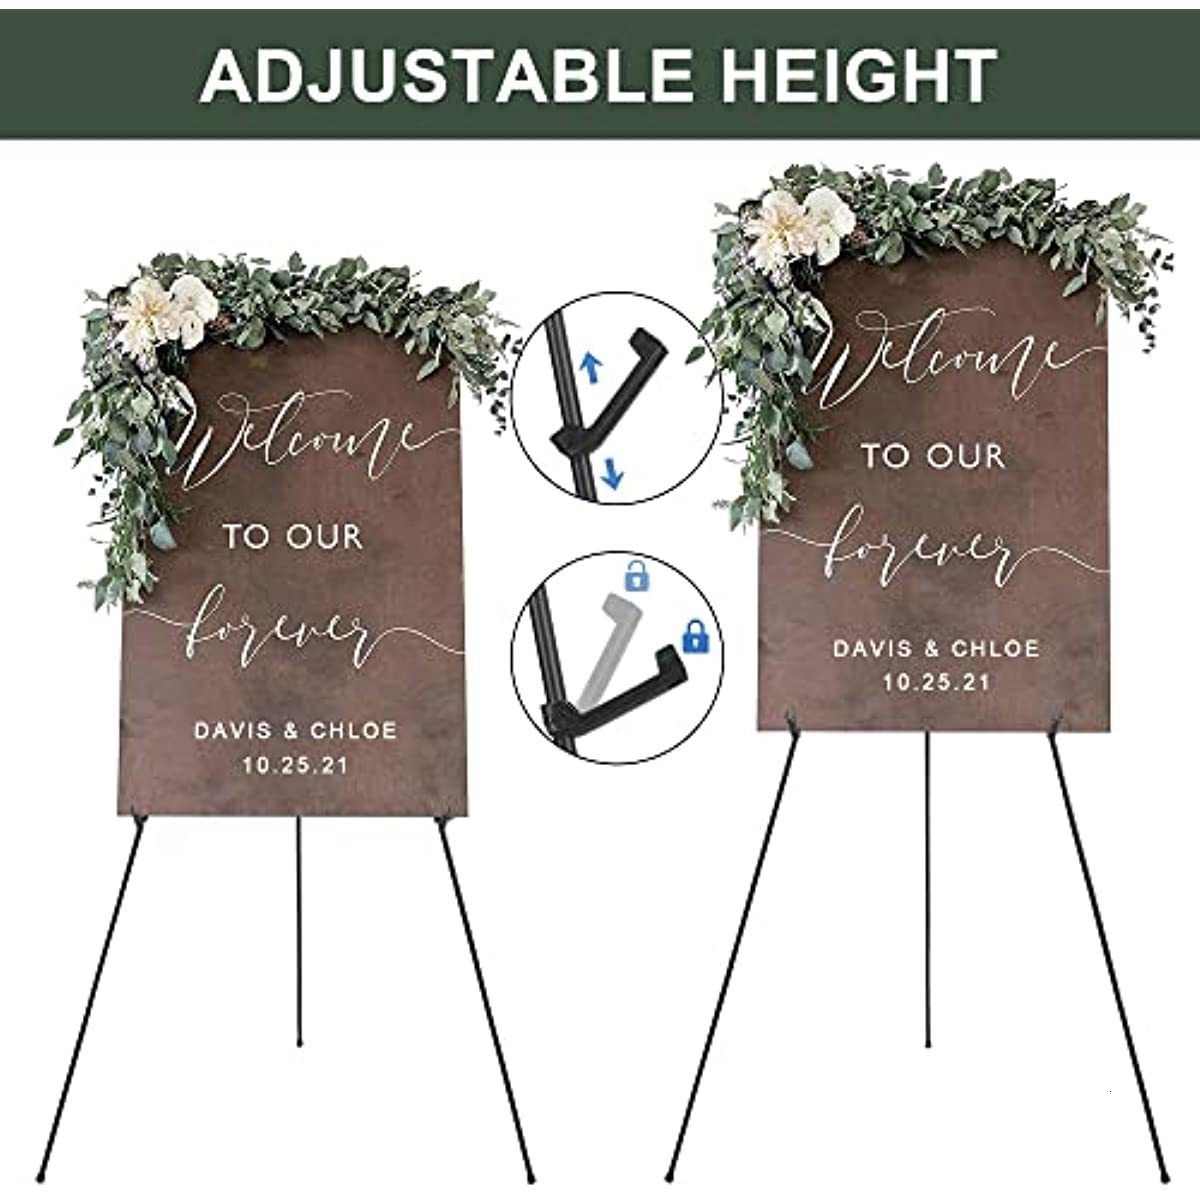 Display Black Easel Stand for Wedding Sign - Artist Black - Instant Easel